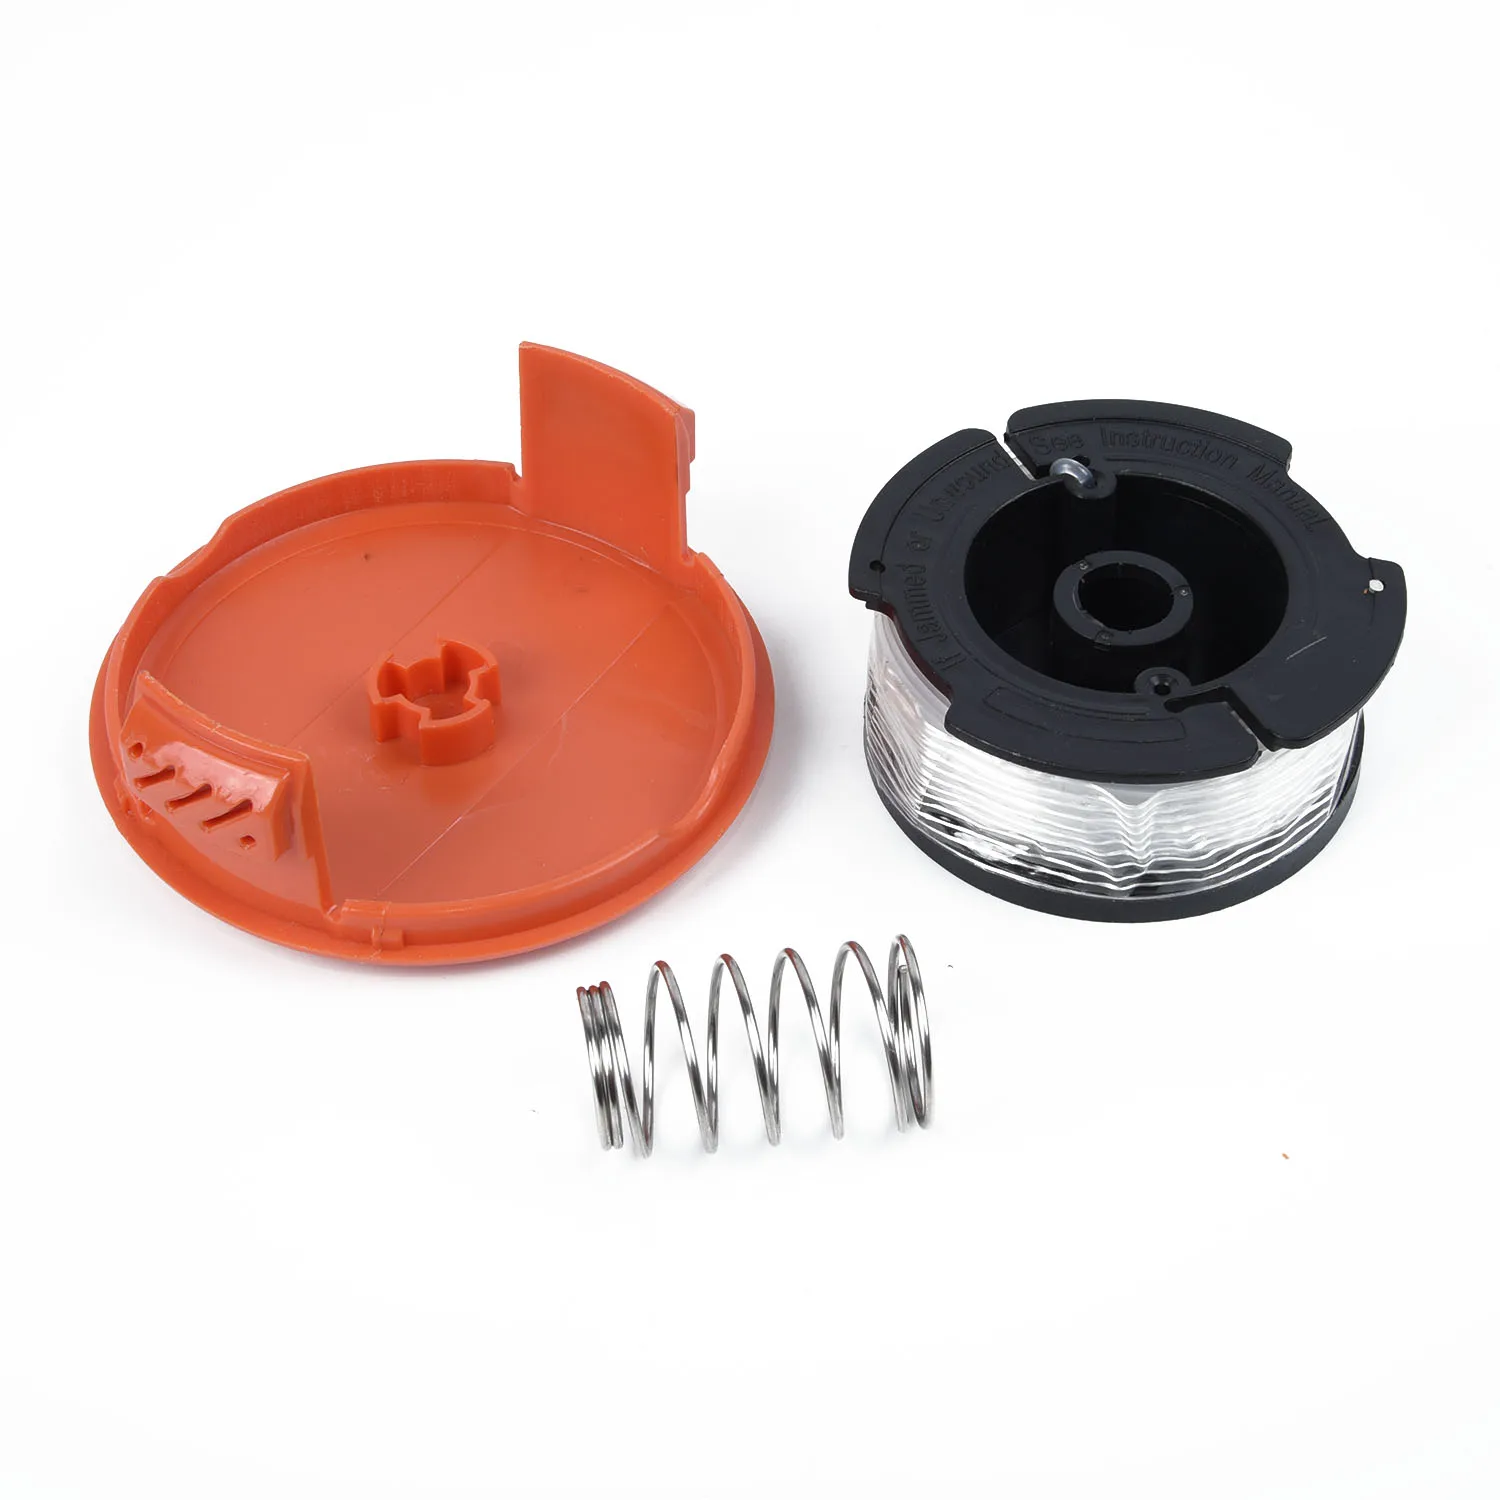 4pcs Line String Trimmer Spool+Cap Cover Spring Replacement For Black Decker  GH400 GH500 GH600 GH610 GH900 GH912 Lawn Mower Part - AliExpress